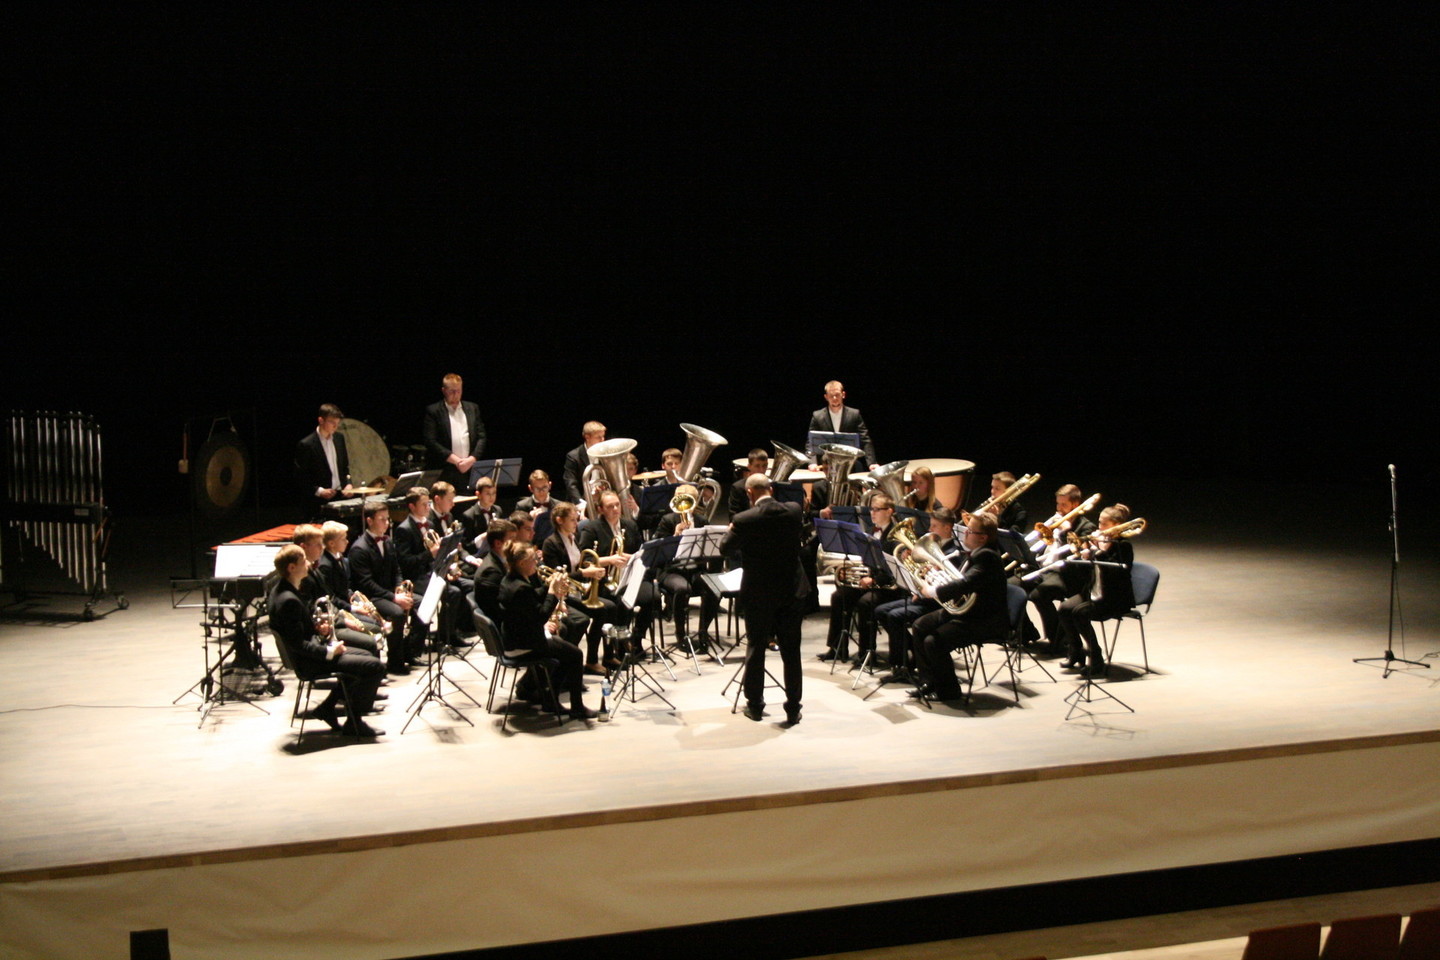 Naujoji kurorto koncertų salė yra moderniausia visose Rytų Baltijos šalyse<br>A.Ziabkus